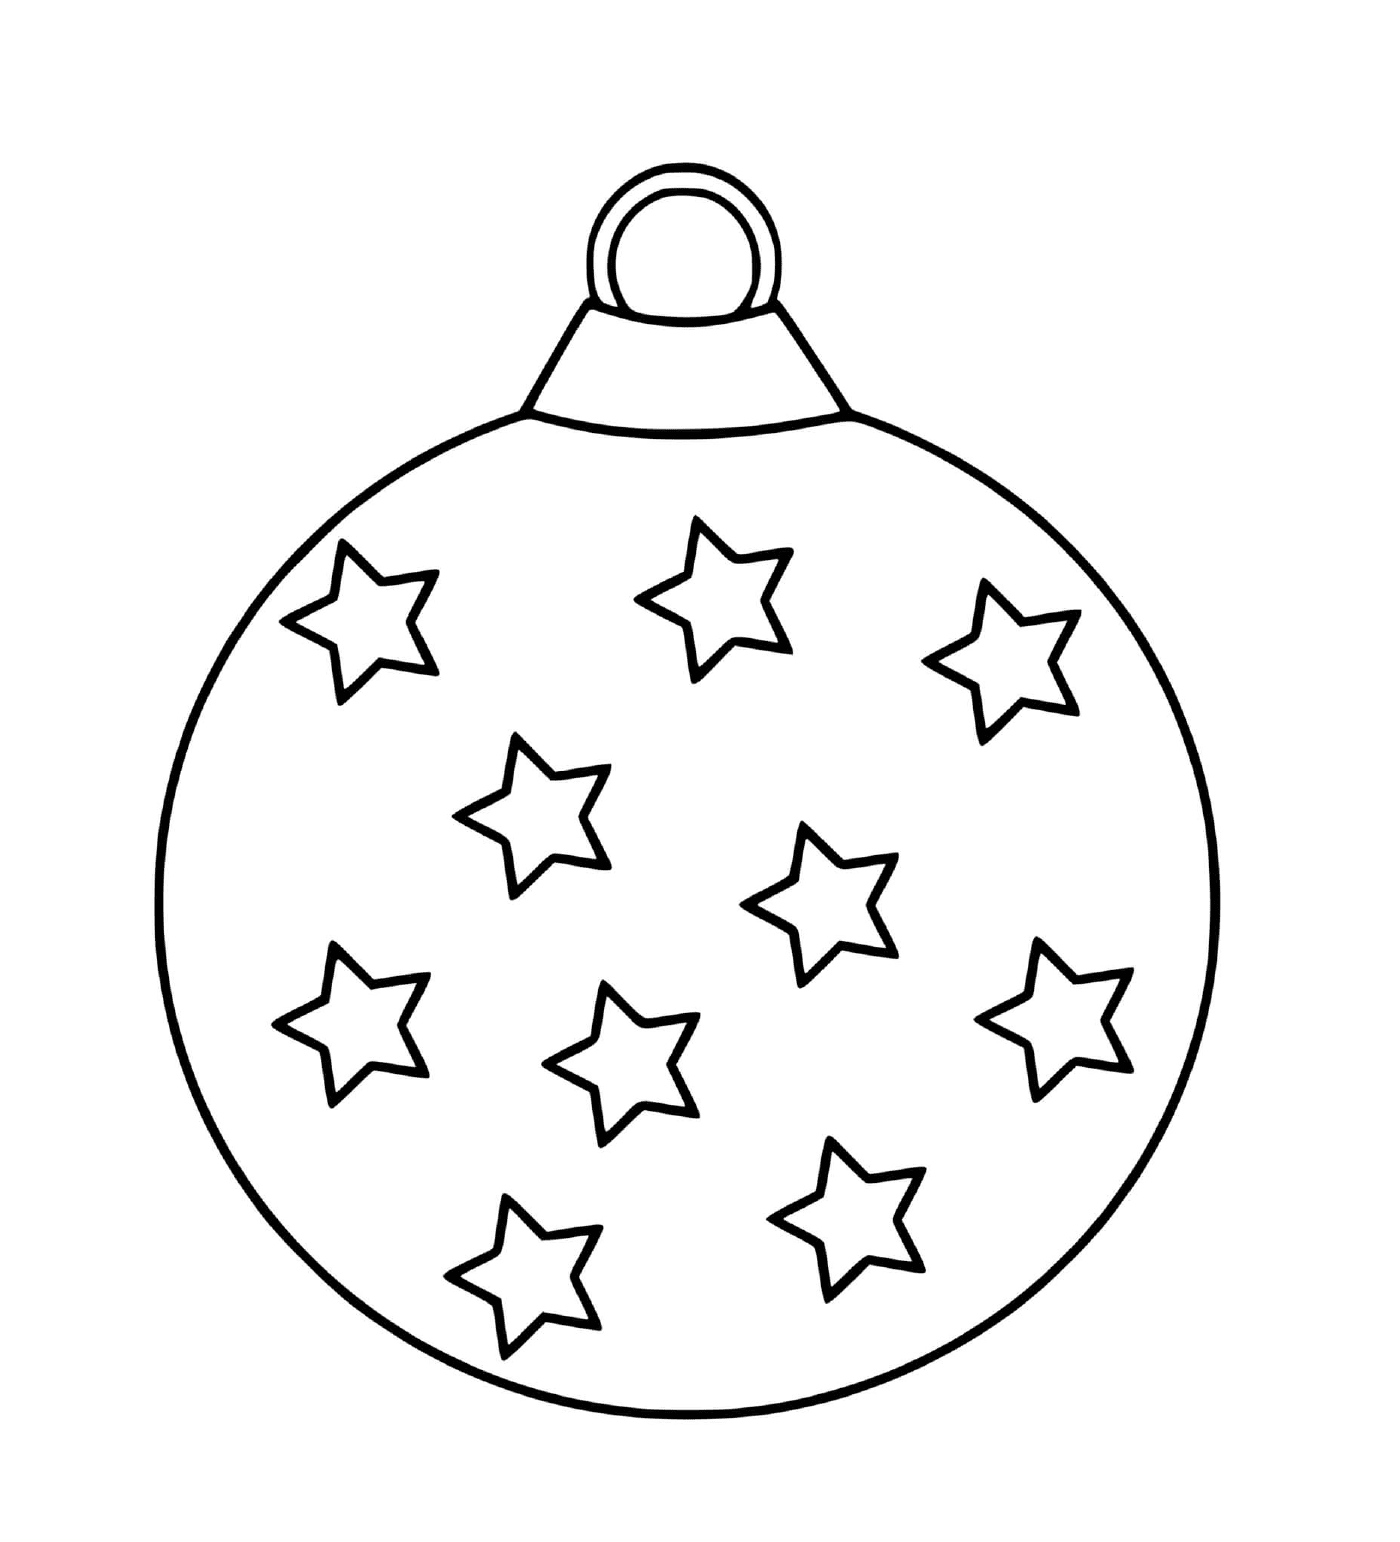  एक माँ के क्रिसमस की गेंद सितारों के साथ 